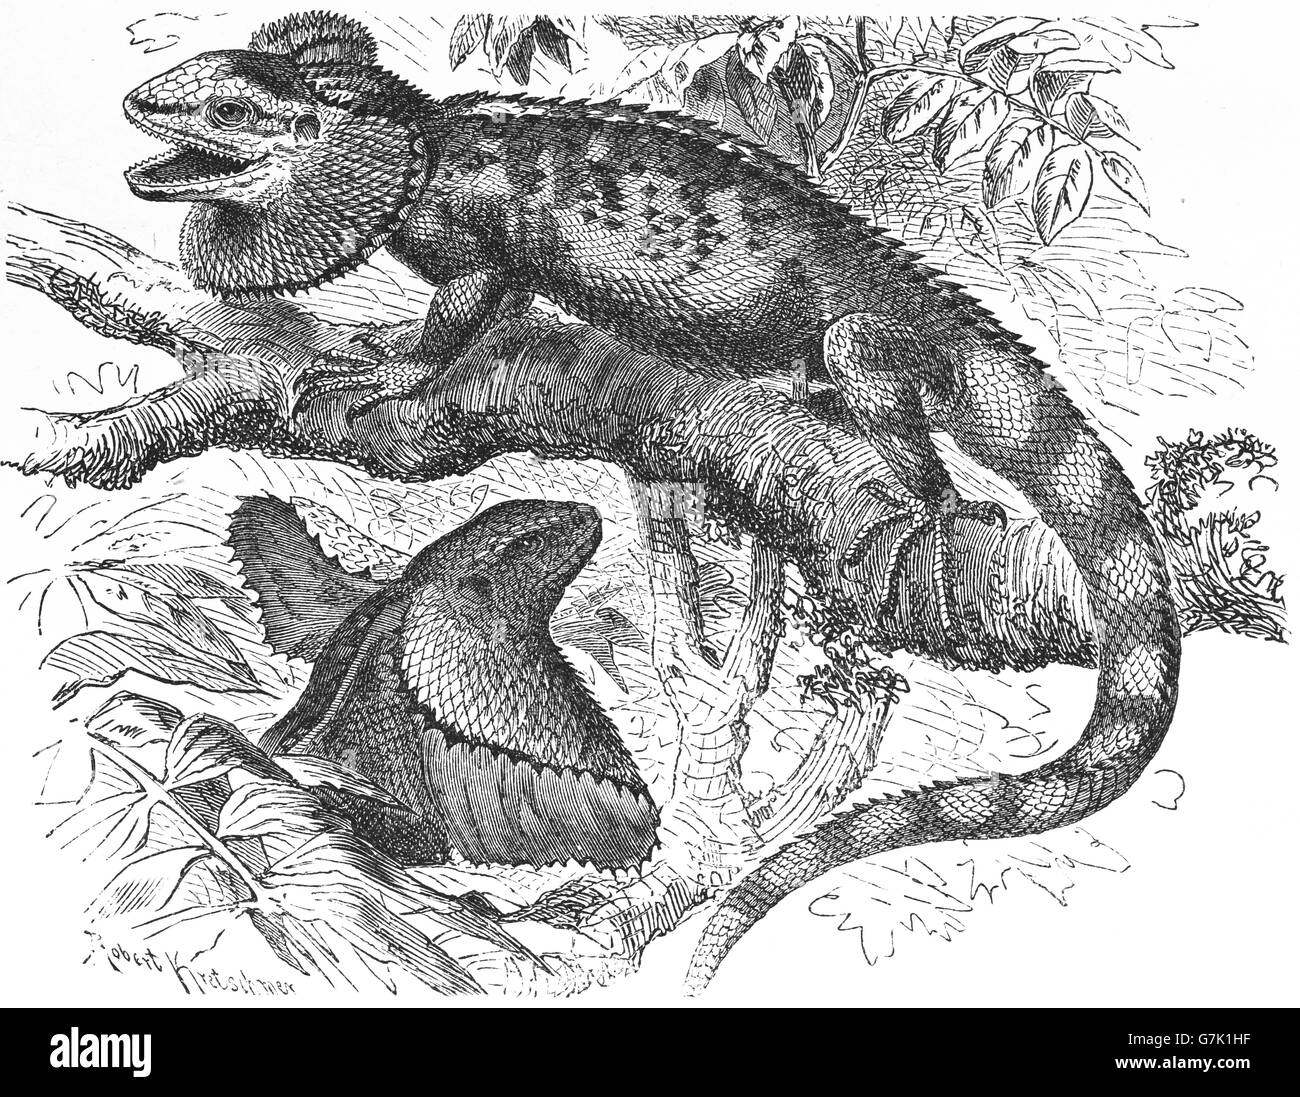 Frilled-neck lizard, frilled lizard, frilled dragon, frilled agama, Chlamydosaurus kingi, illustration from book dated 1904 Stock Photo